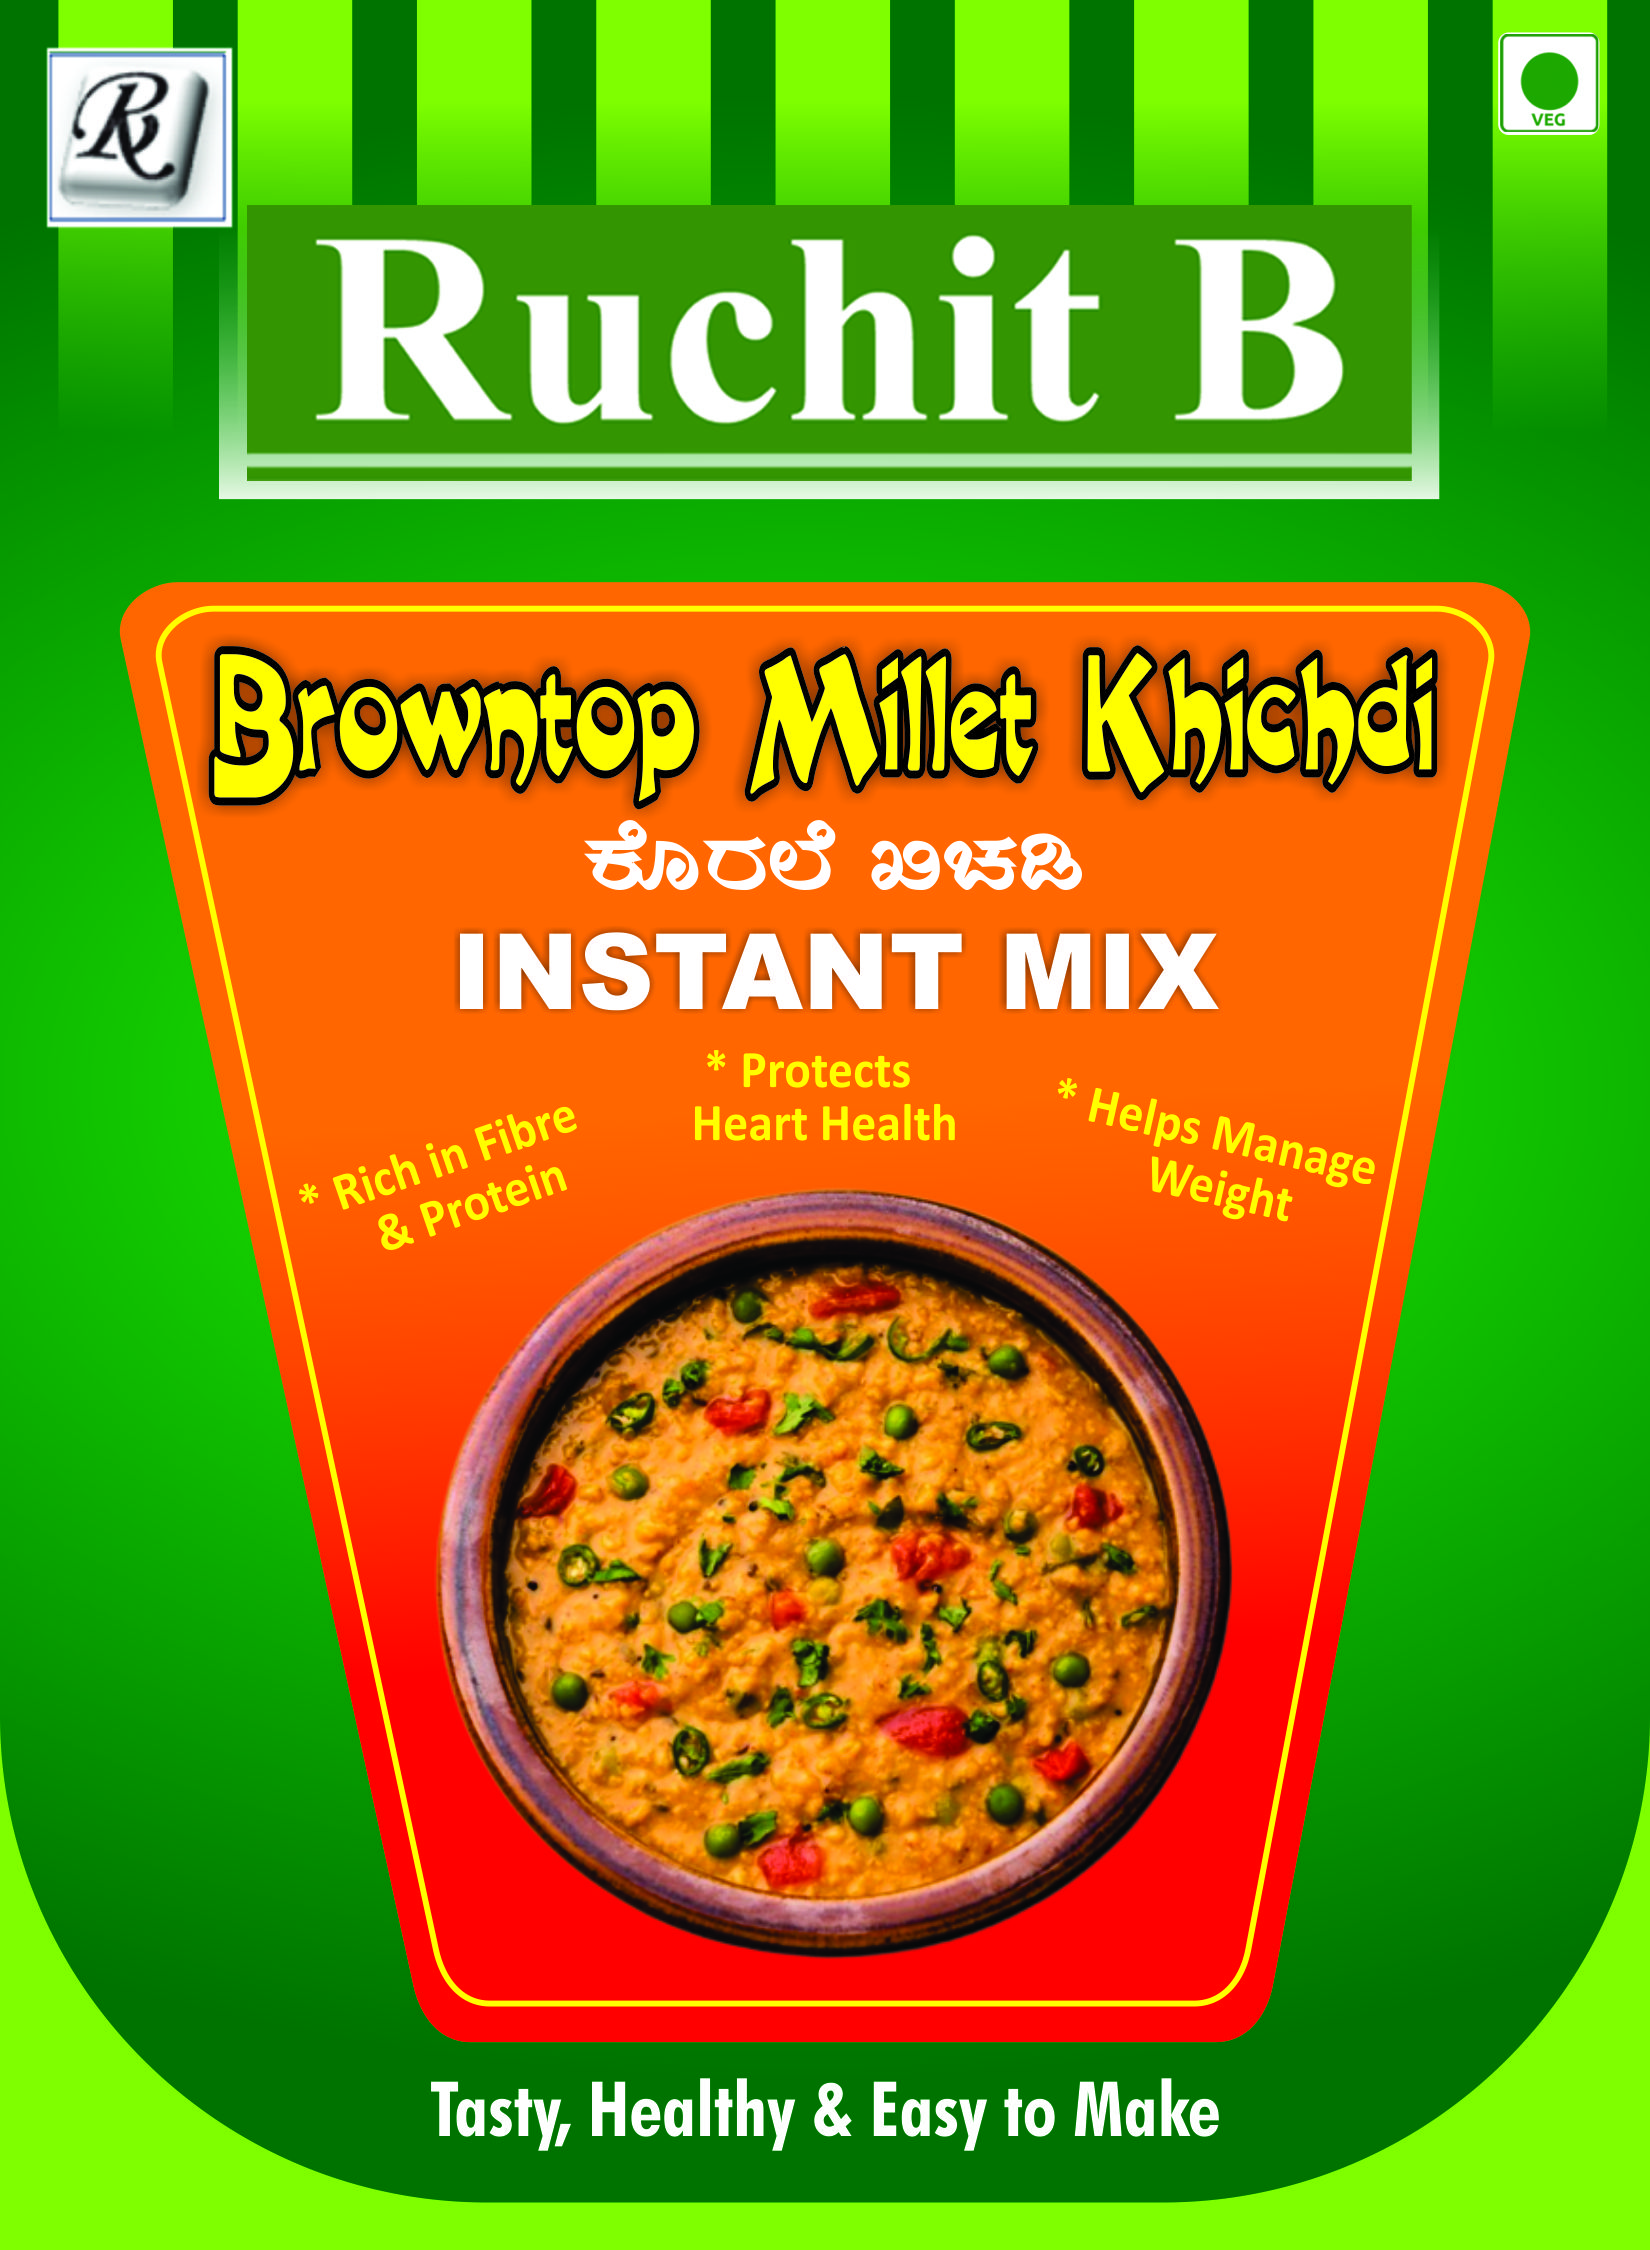 Browntop Millet Khichdi